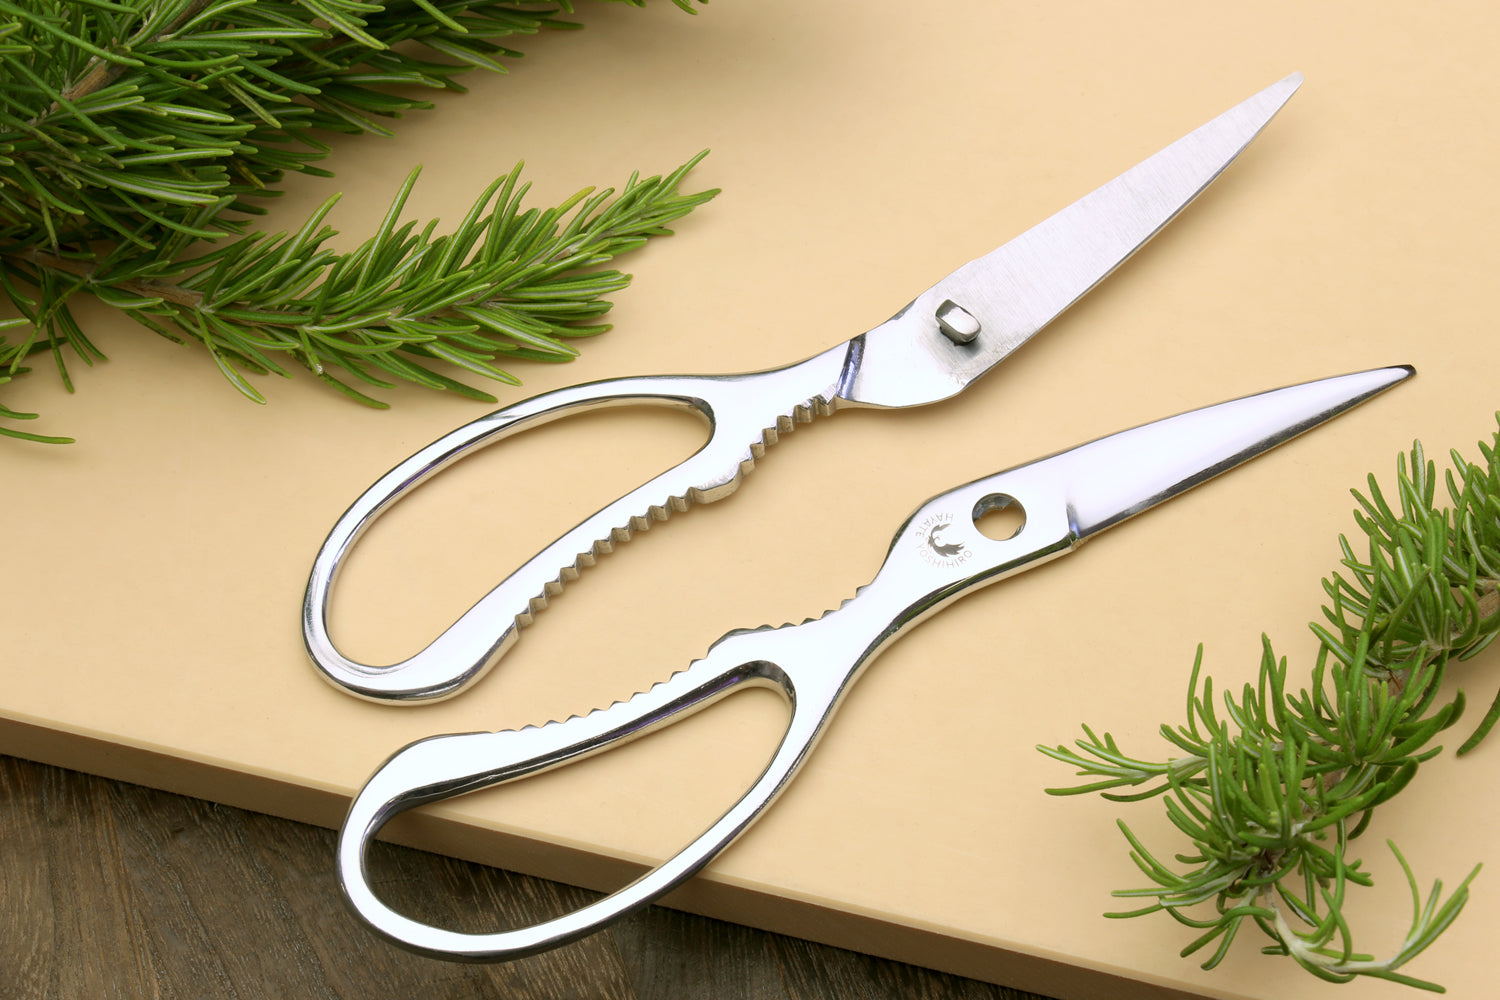 Kitchen Scissors Heavy Duty Herb Scissors 5 Blades Stainless Steel